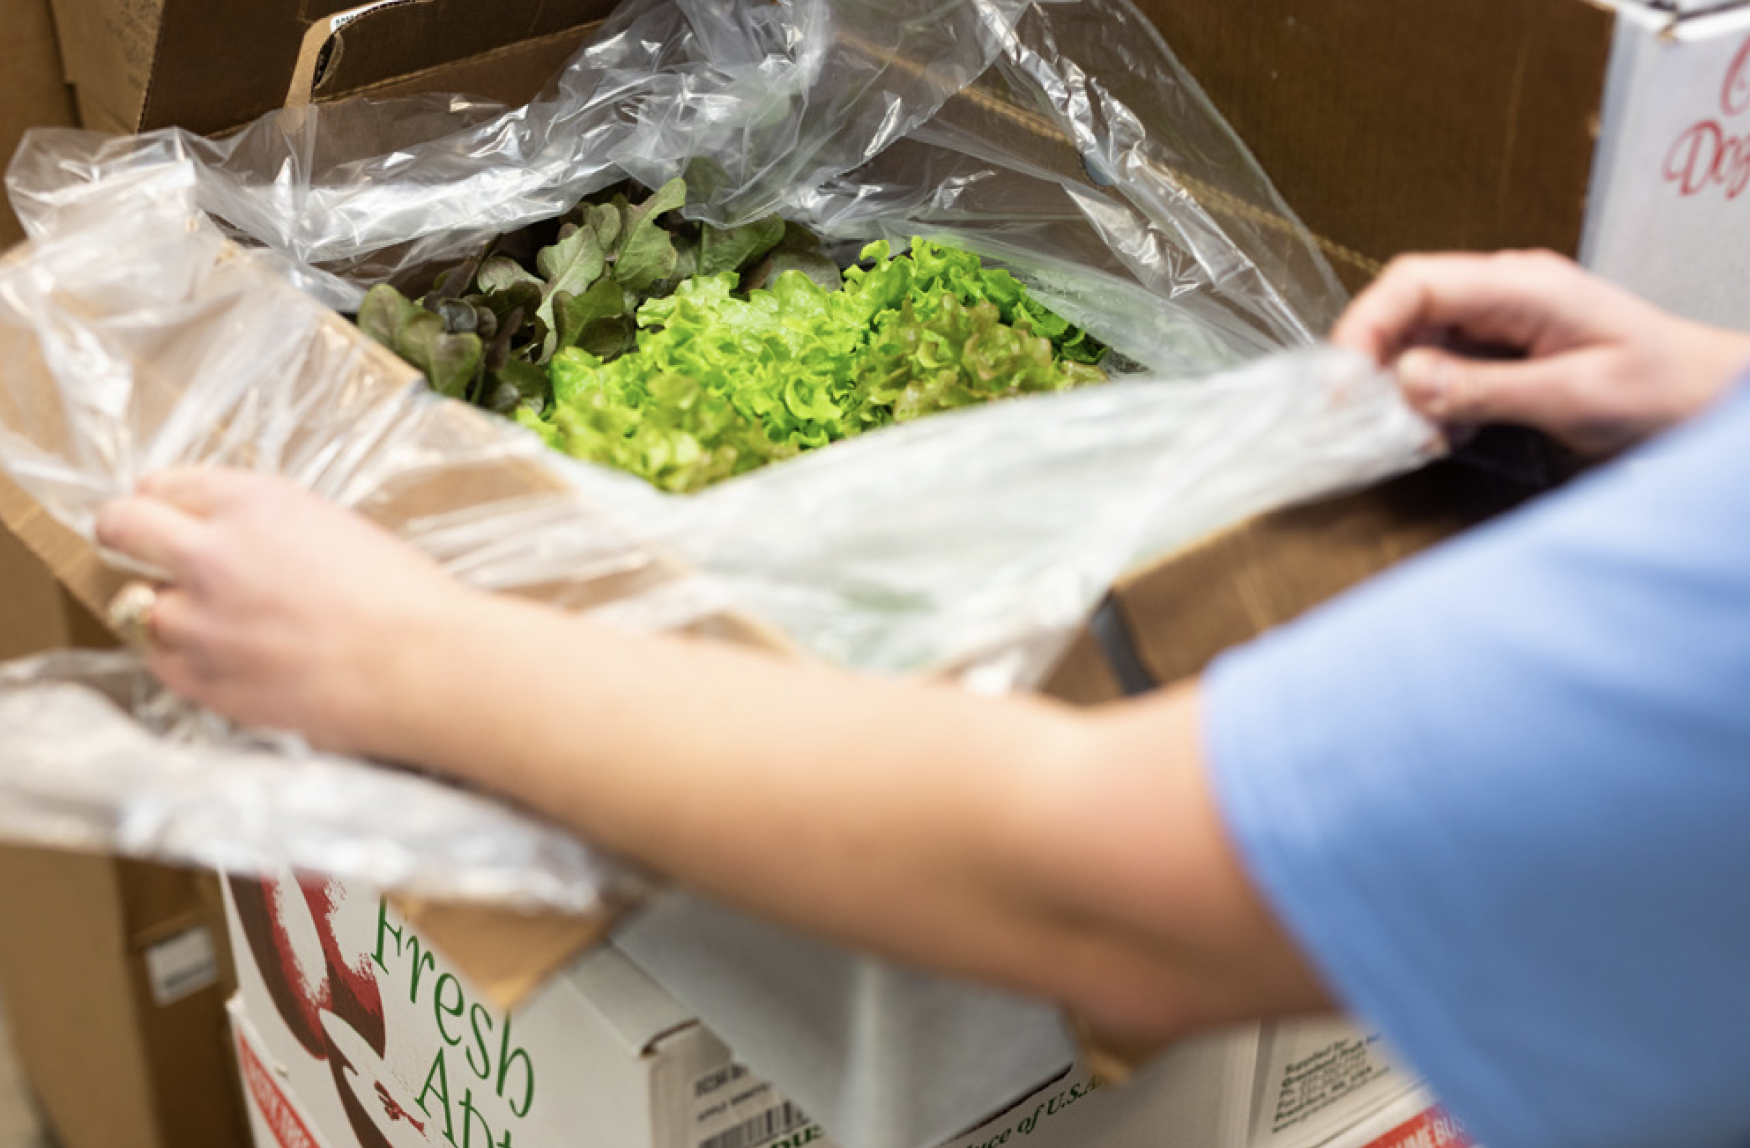 A school chef unpacks a box of farm fresh lettuce.